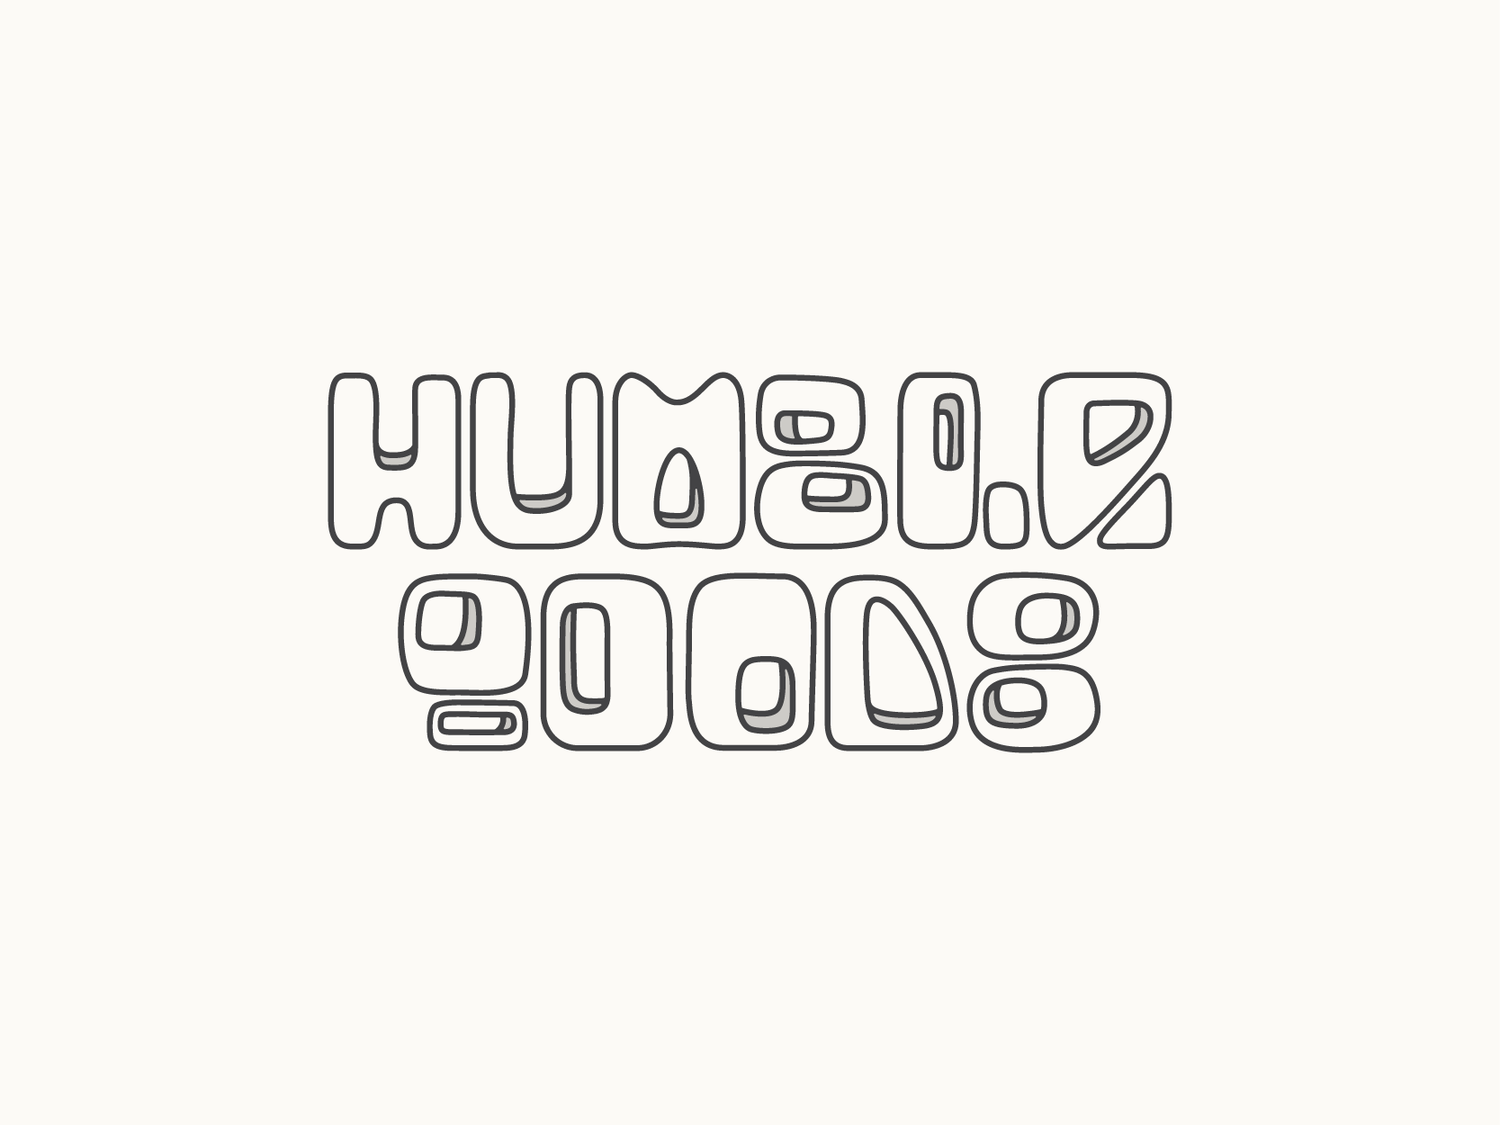 Humble+Goods+Design_Retro+Font-01-01.png